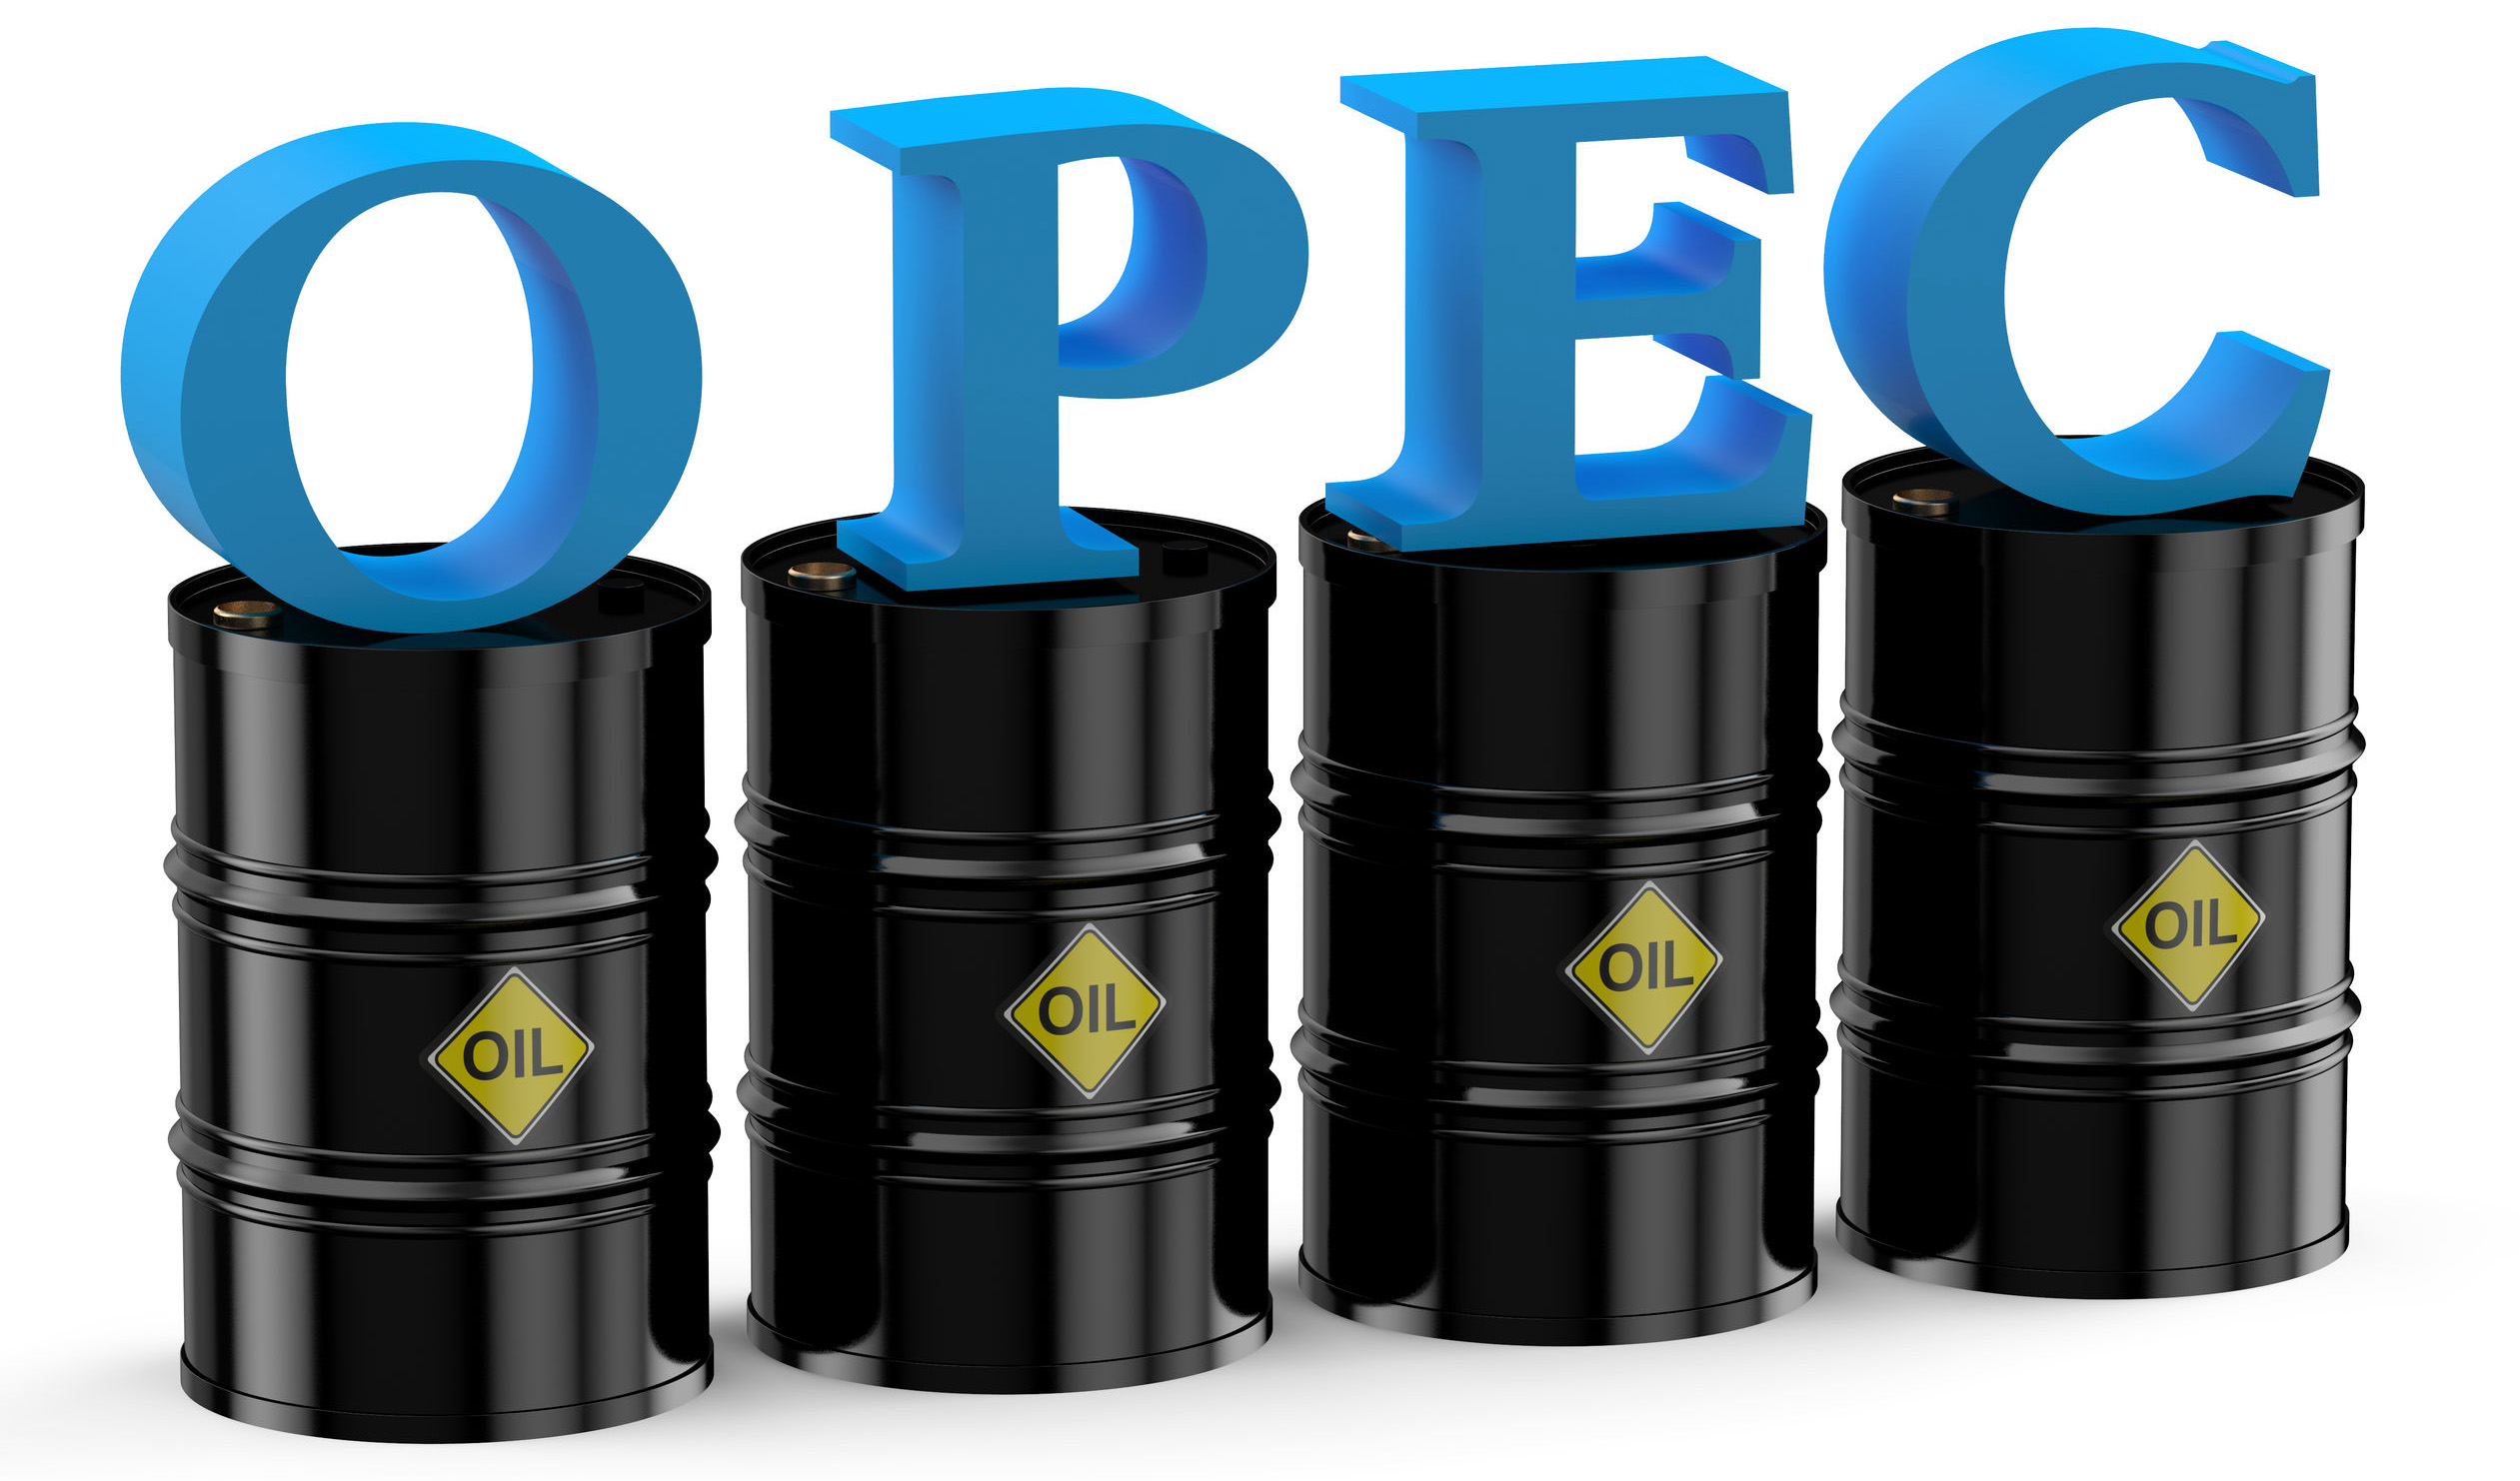 قیمت سبد نفتی اوپک به مرز ۲۳ دلار رسید